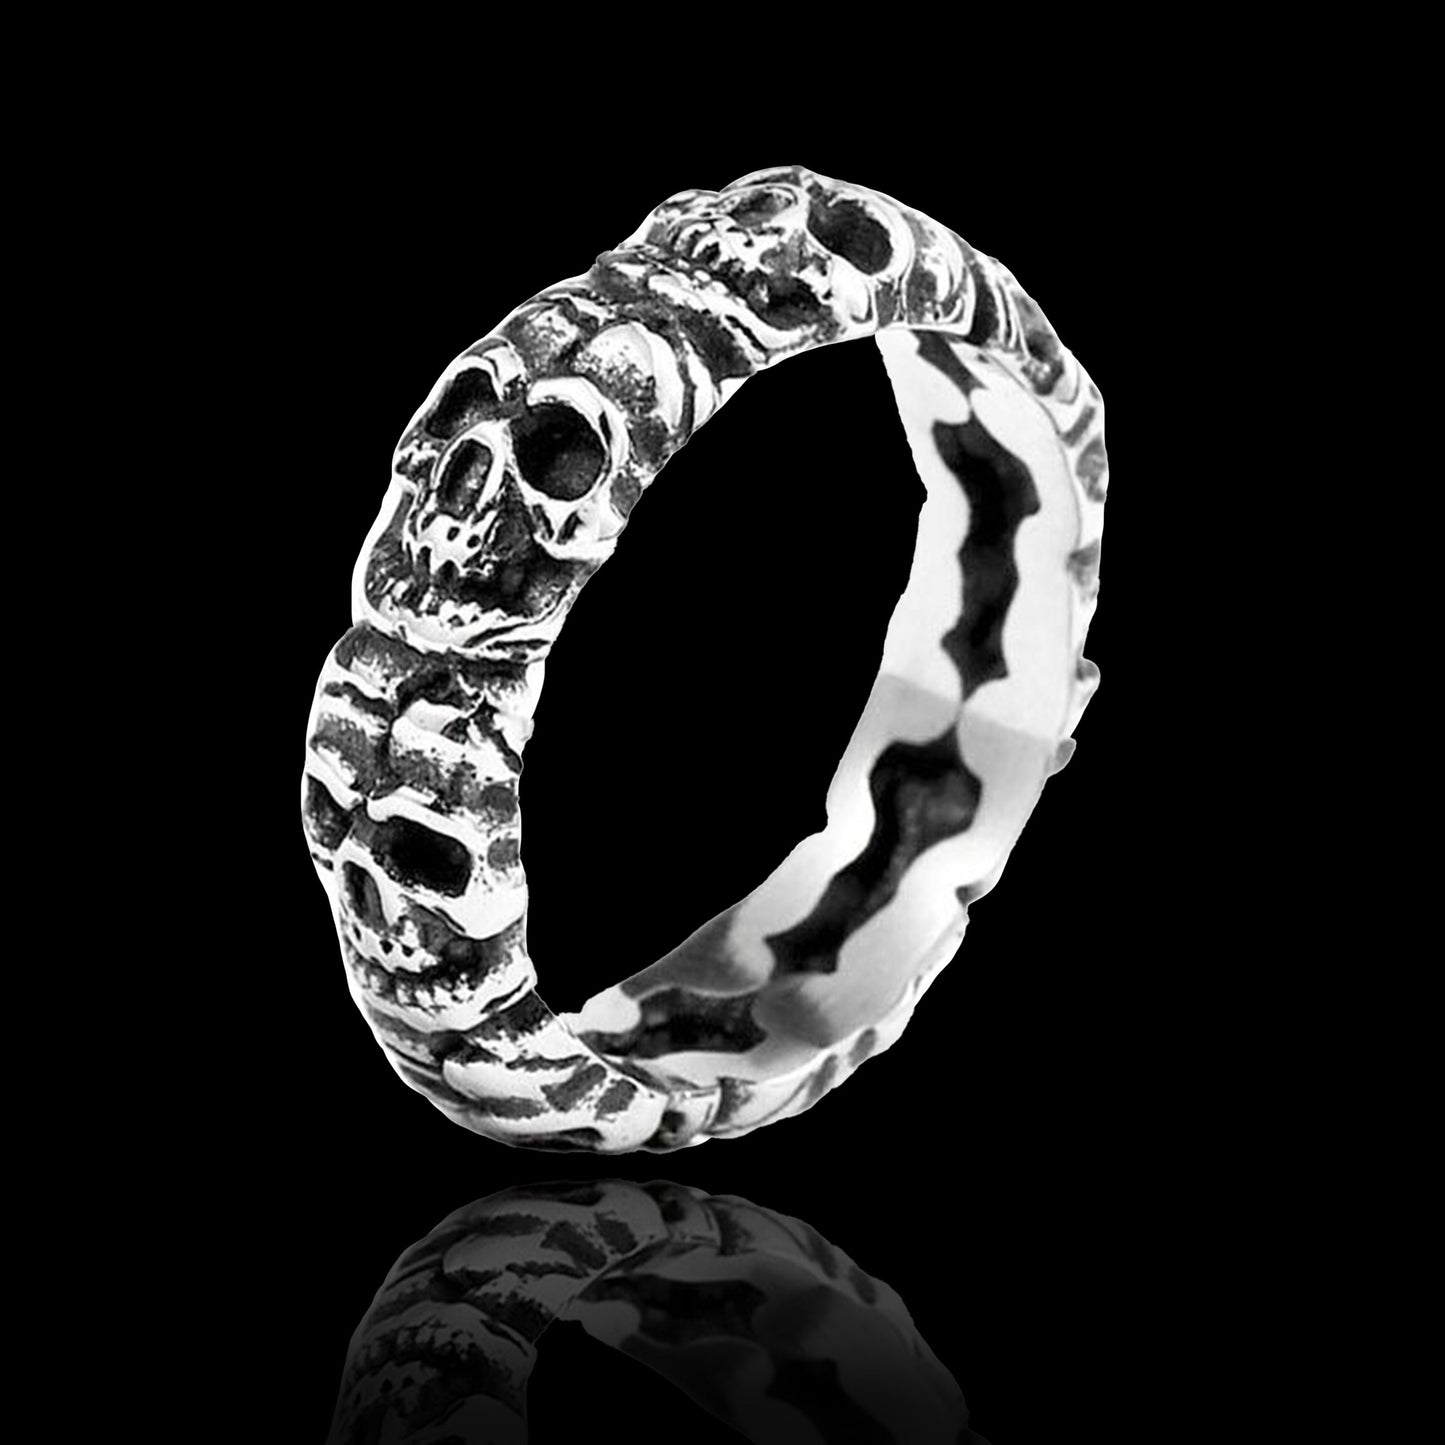 Retro Stainless Steel Skull Ring